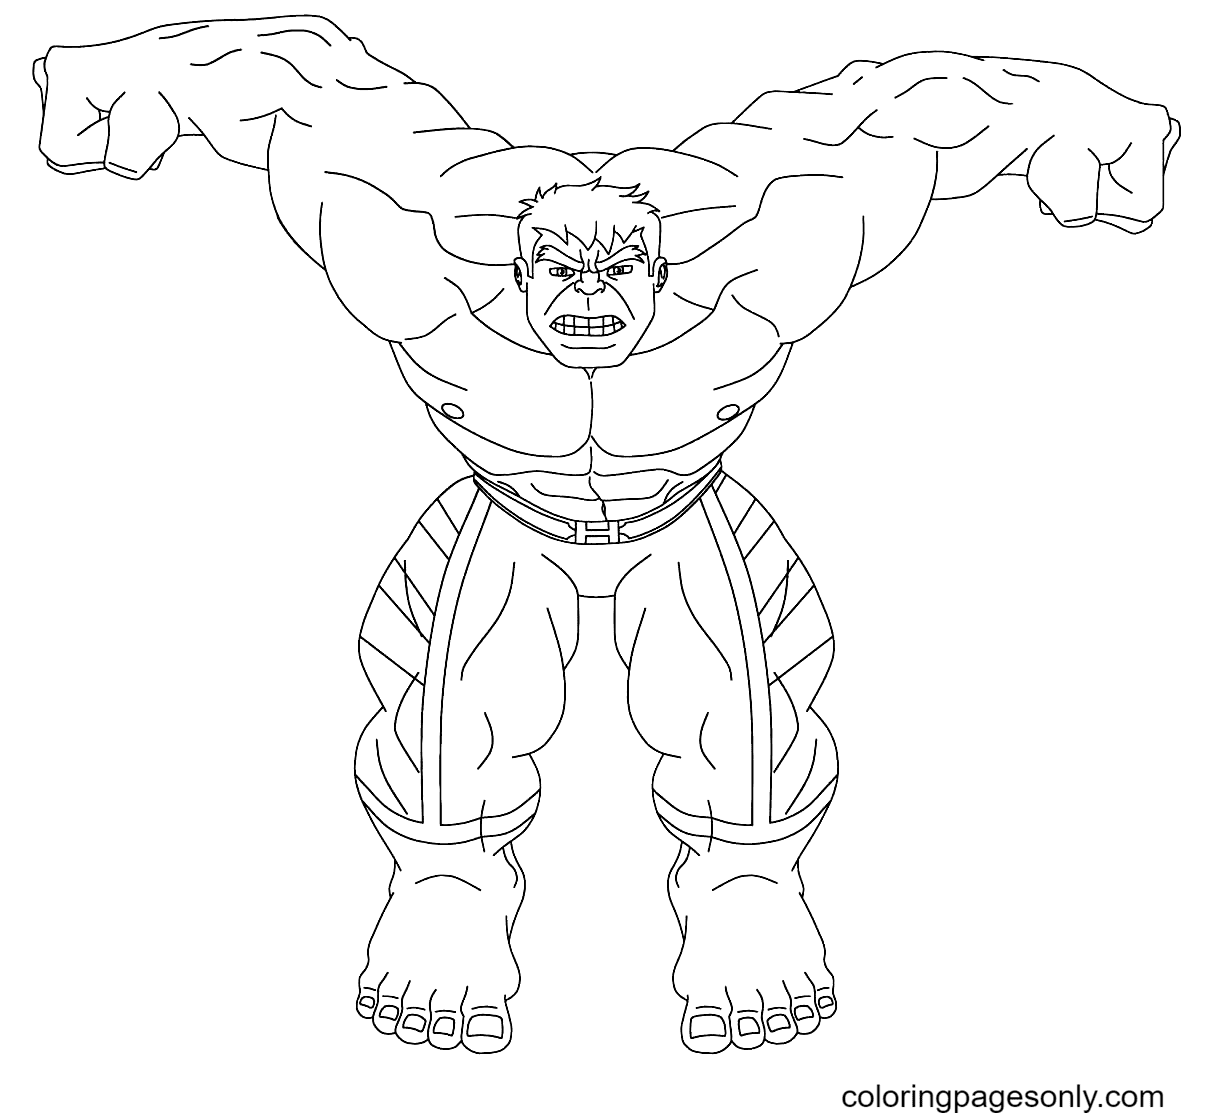 Página para colorear de Hulk gratis